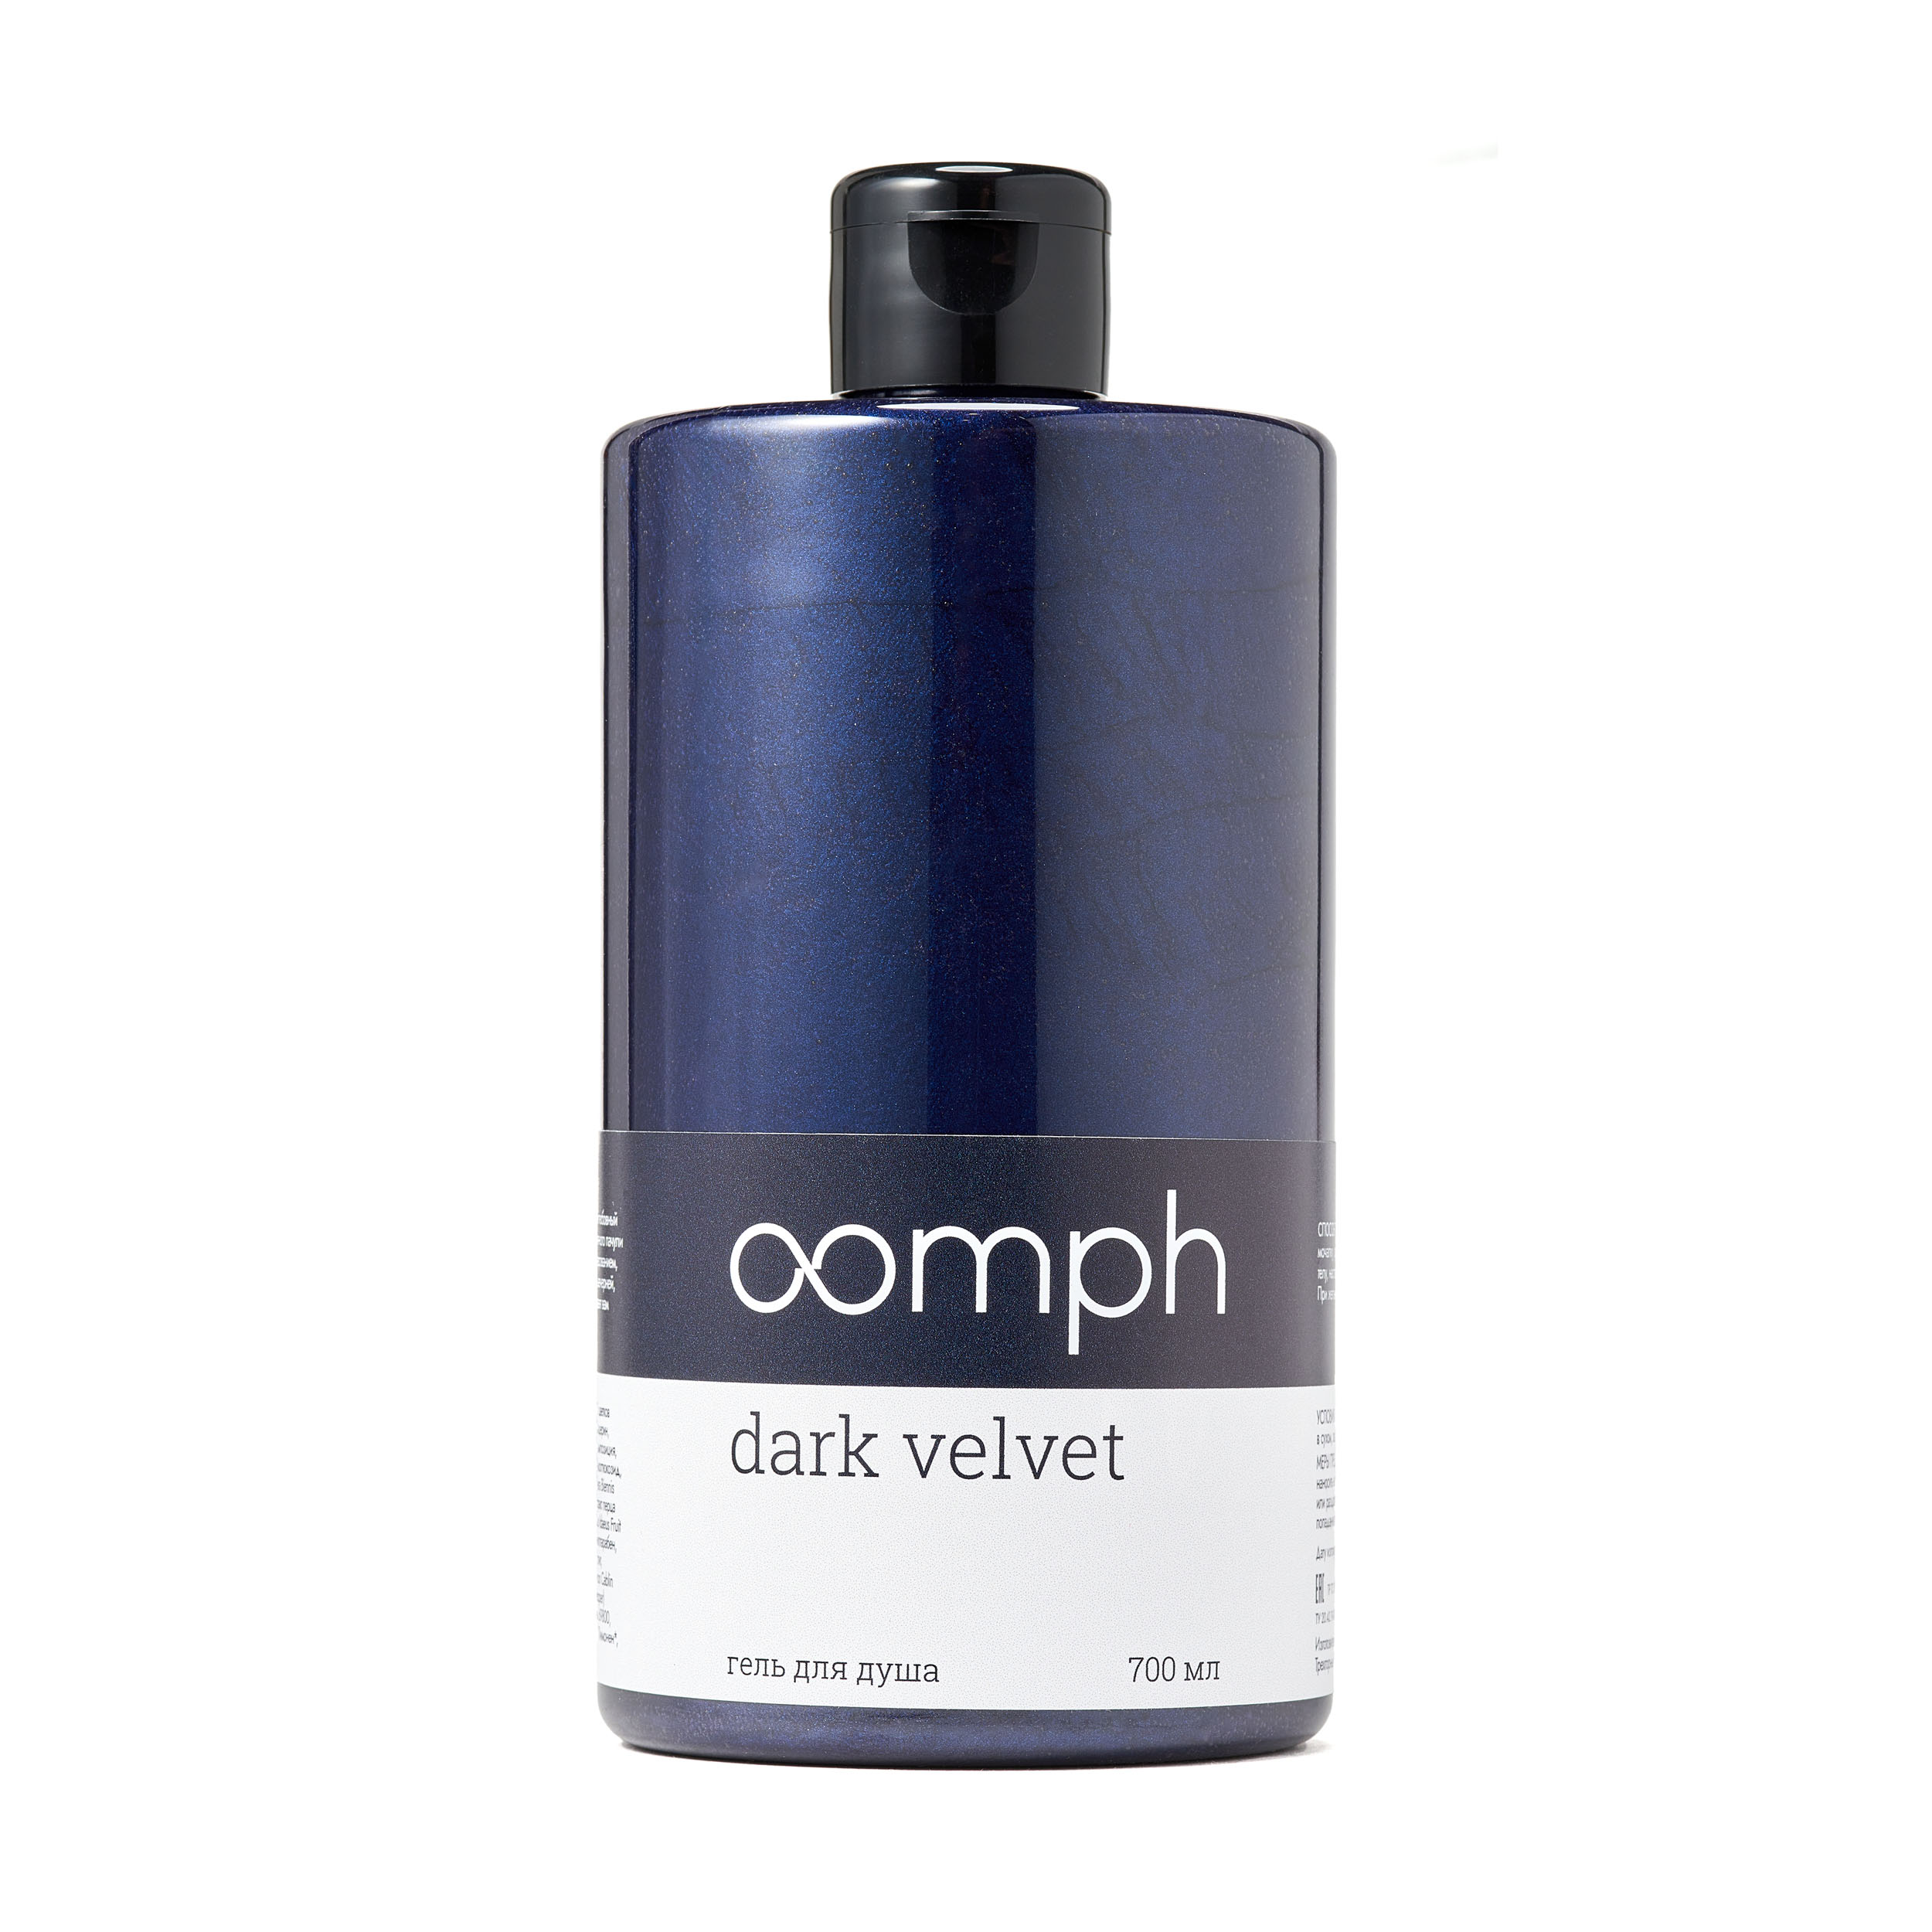 Гель для душа OOMPH Dark velvet 700мл со творение образа богословие иконы